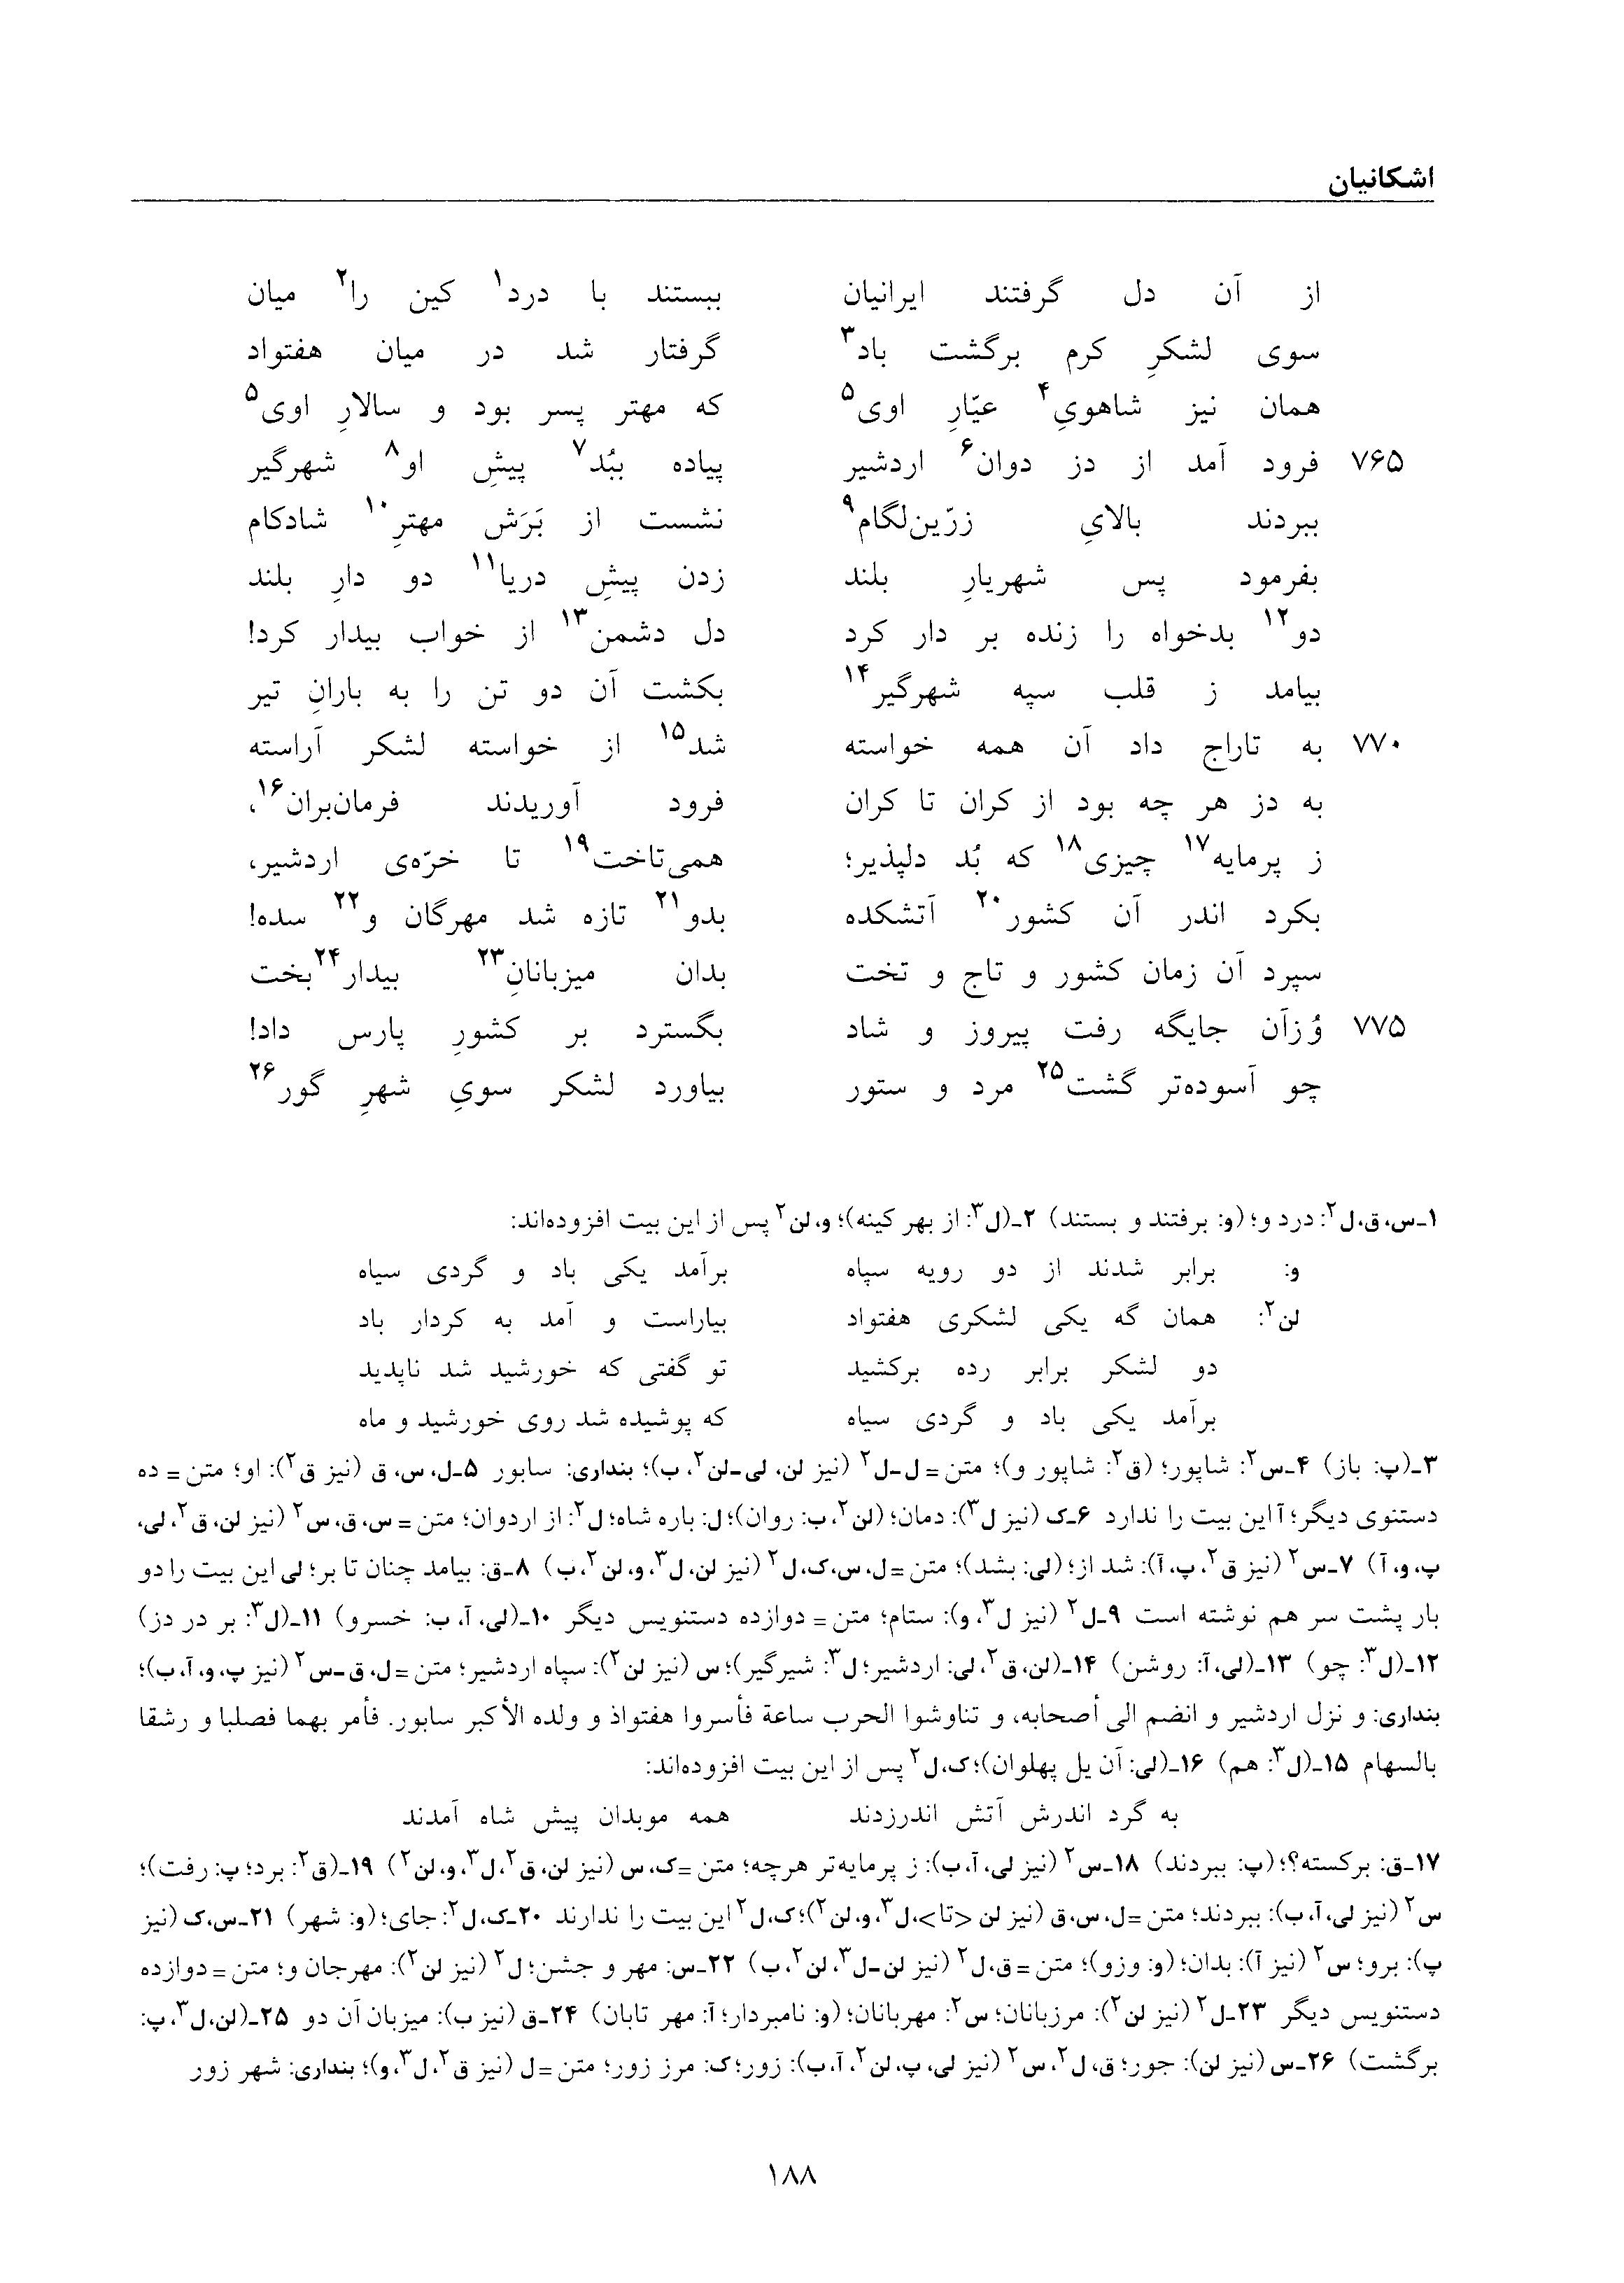 vol. 6, p. 188